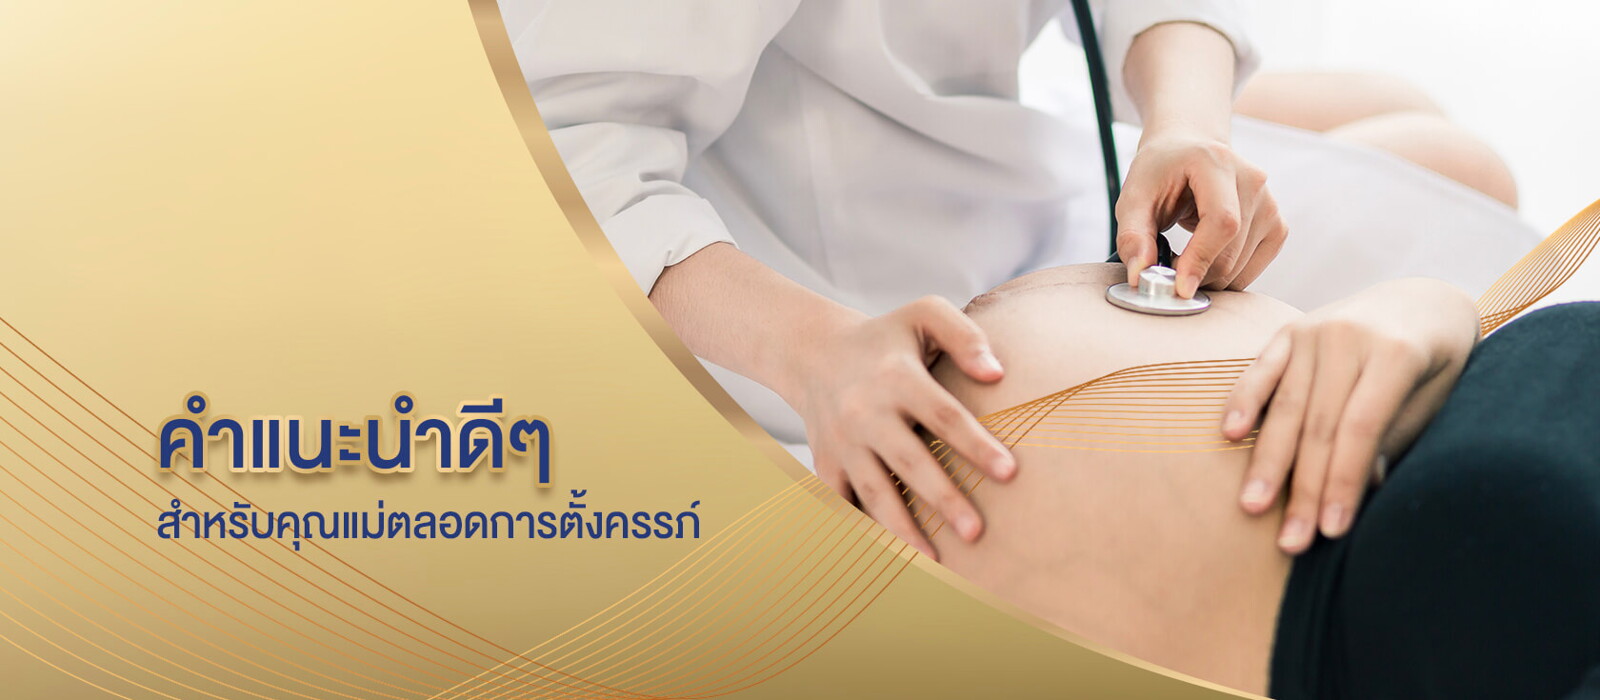 Pregnancy - Pregnancy Tips slide 1